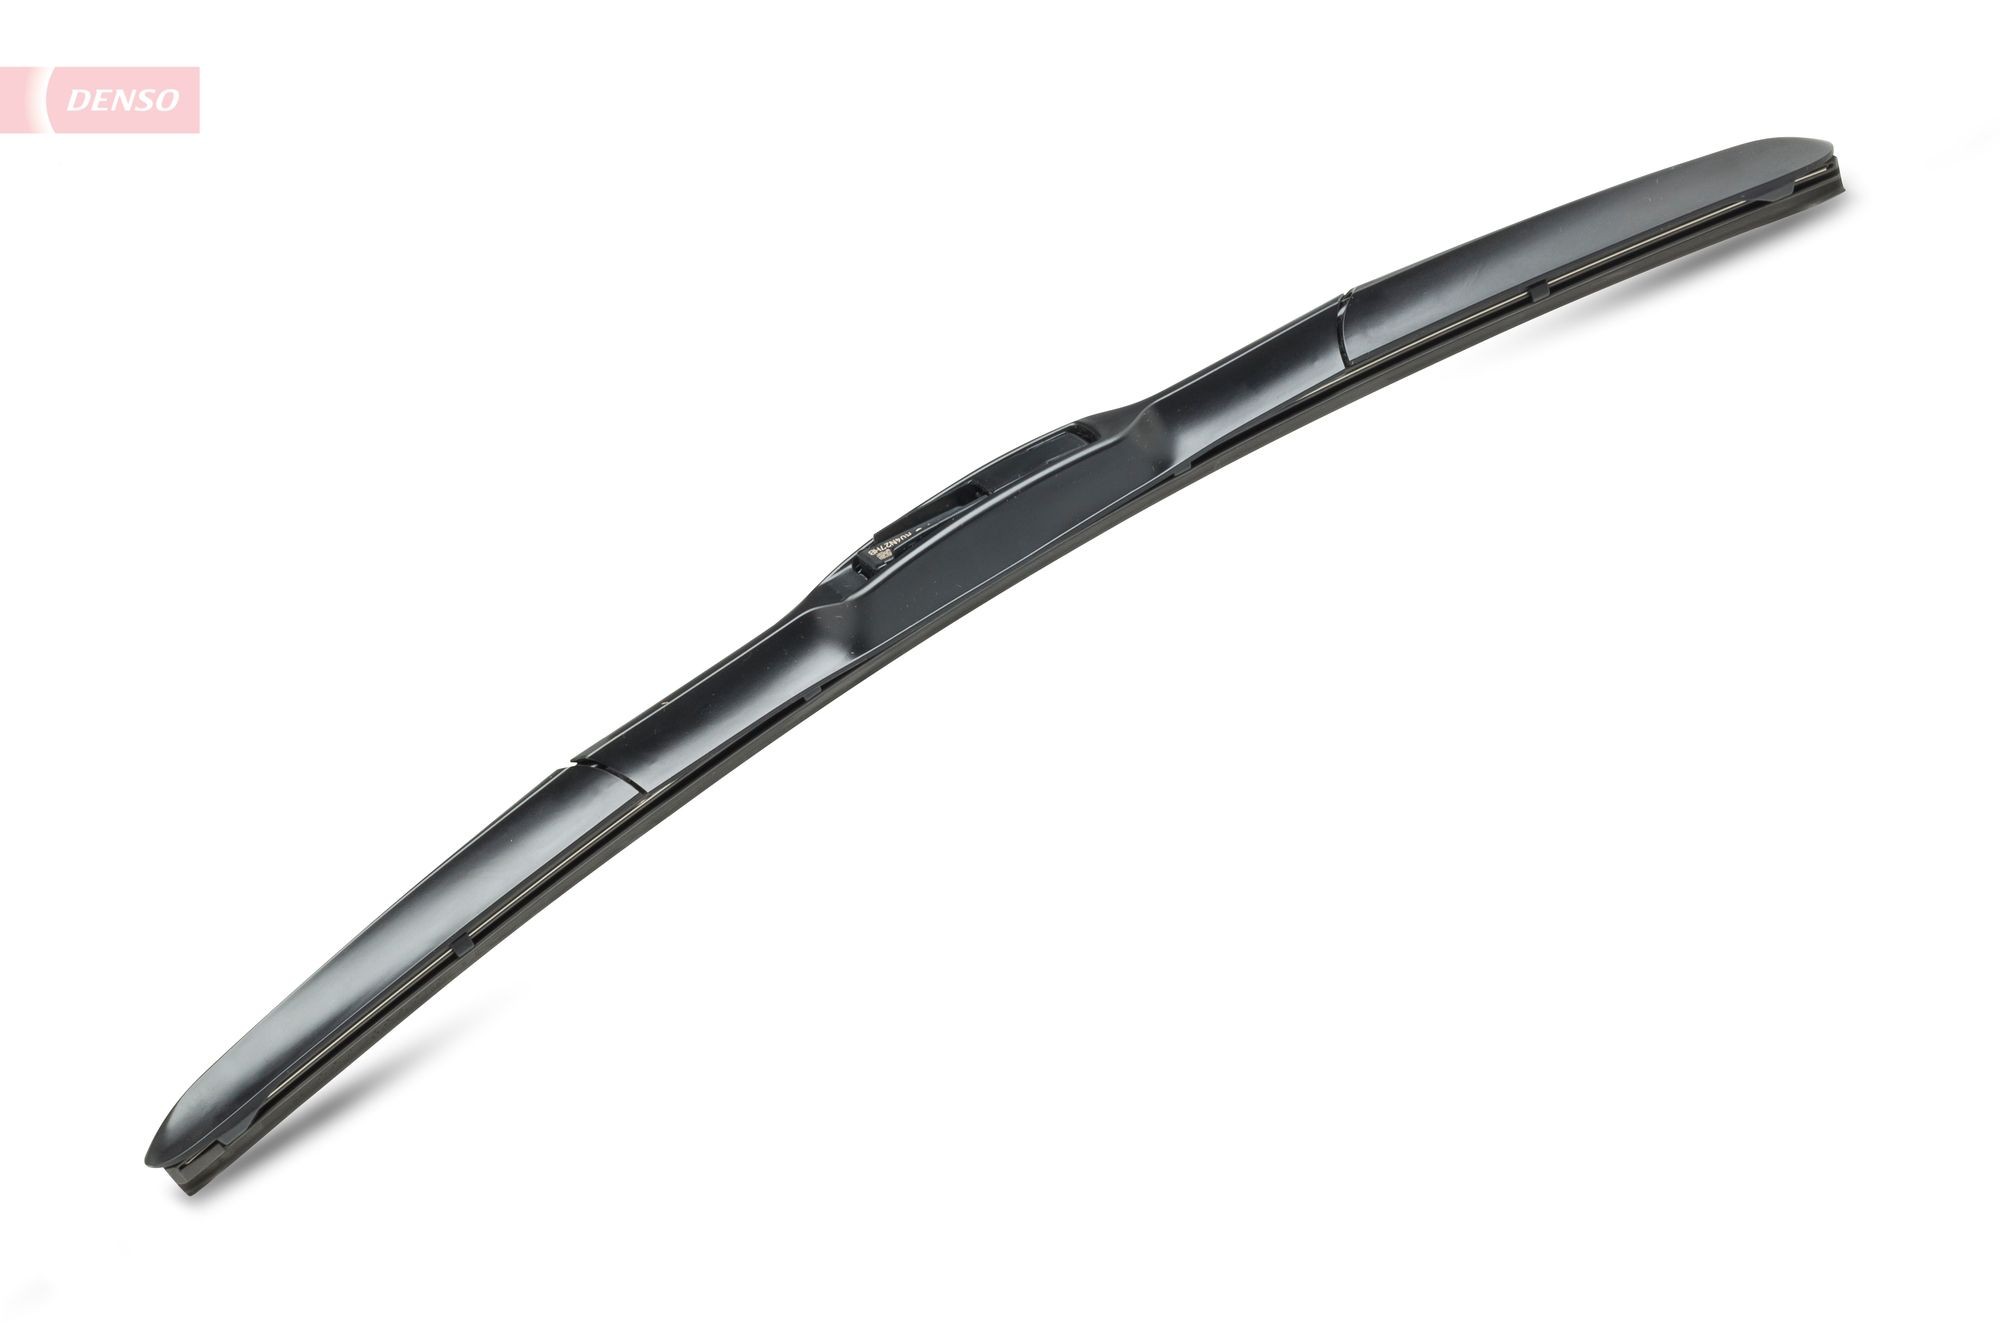 DENSO Hybrid 425 mm, Hybrid Wiper Blade, 17 Inch Wiper blades DUR-043R buy